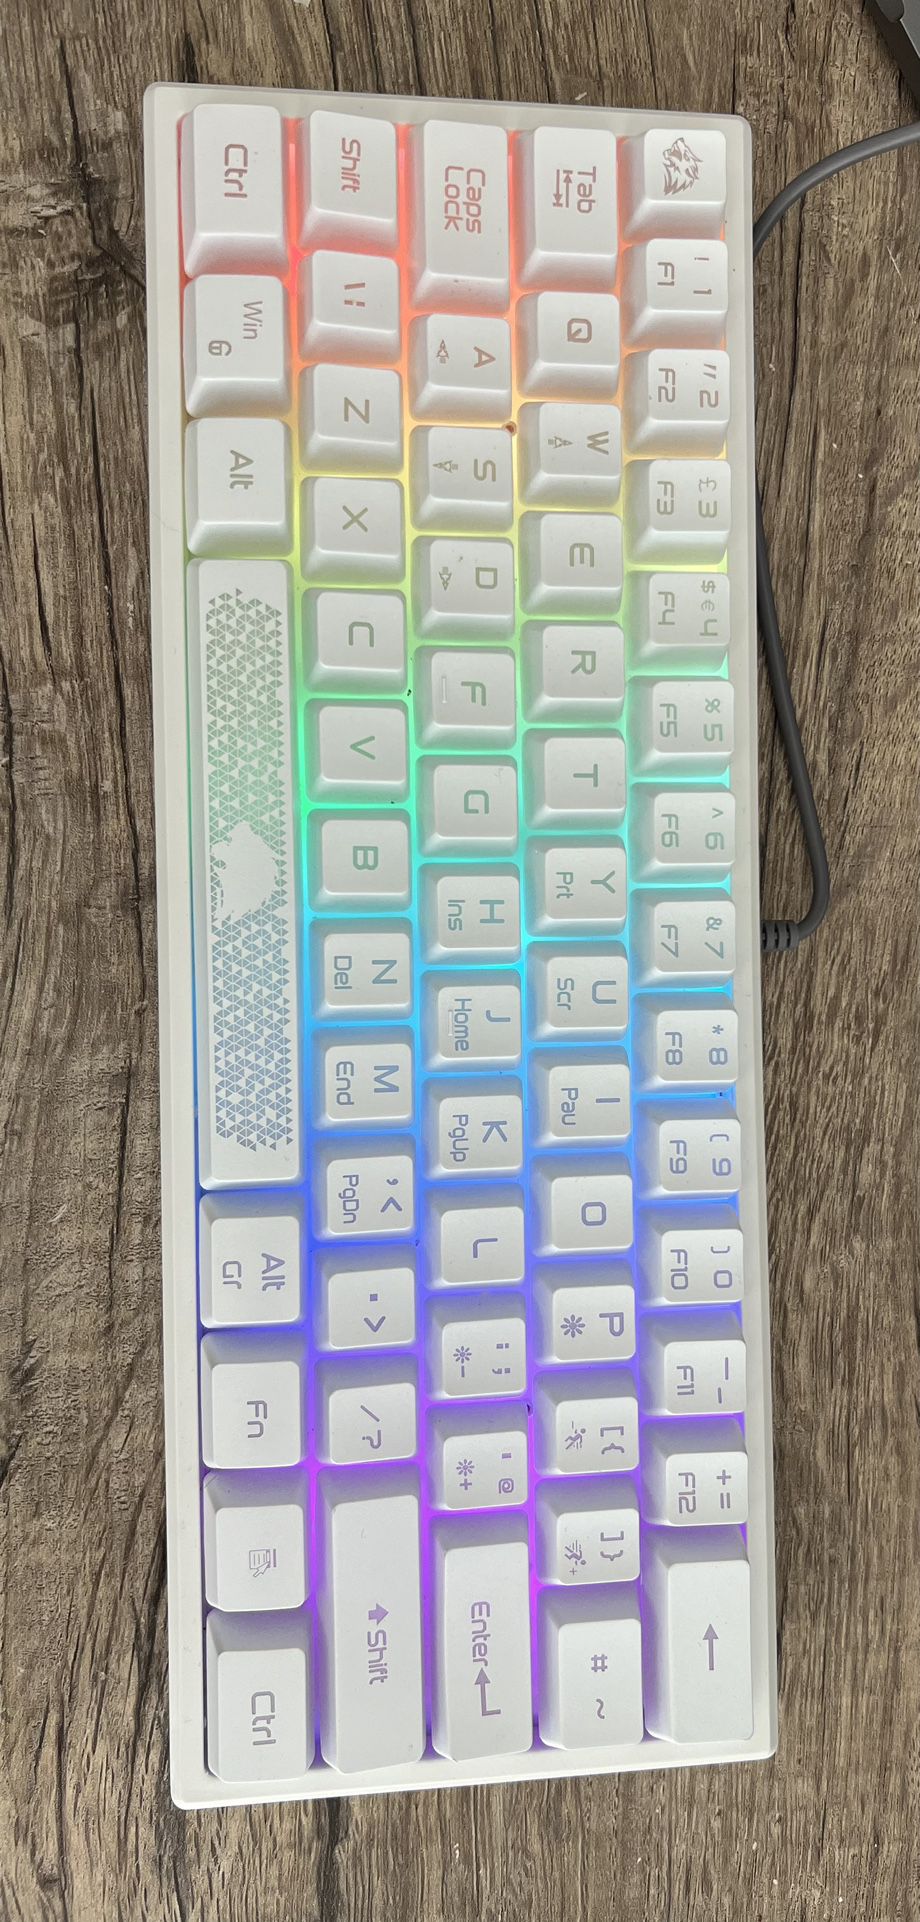 LED Keyboard 